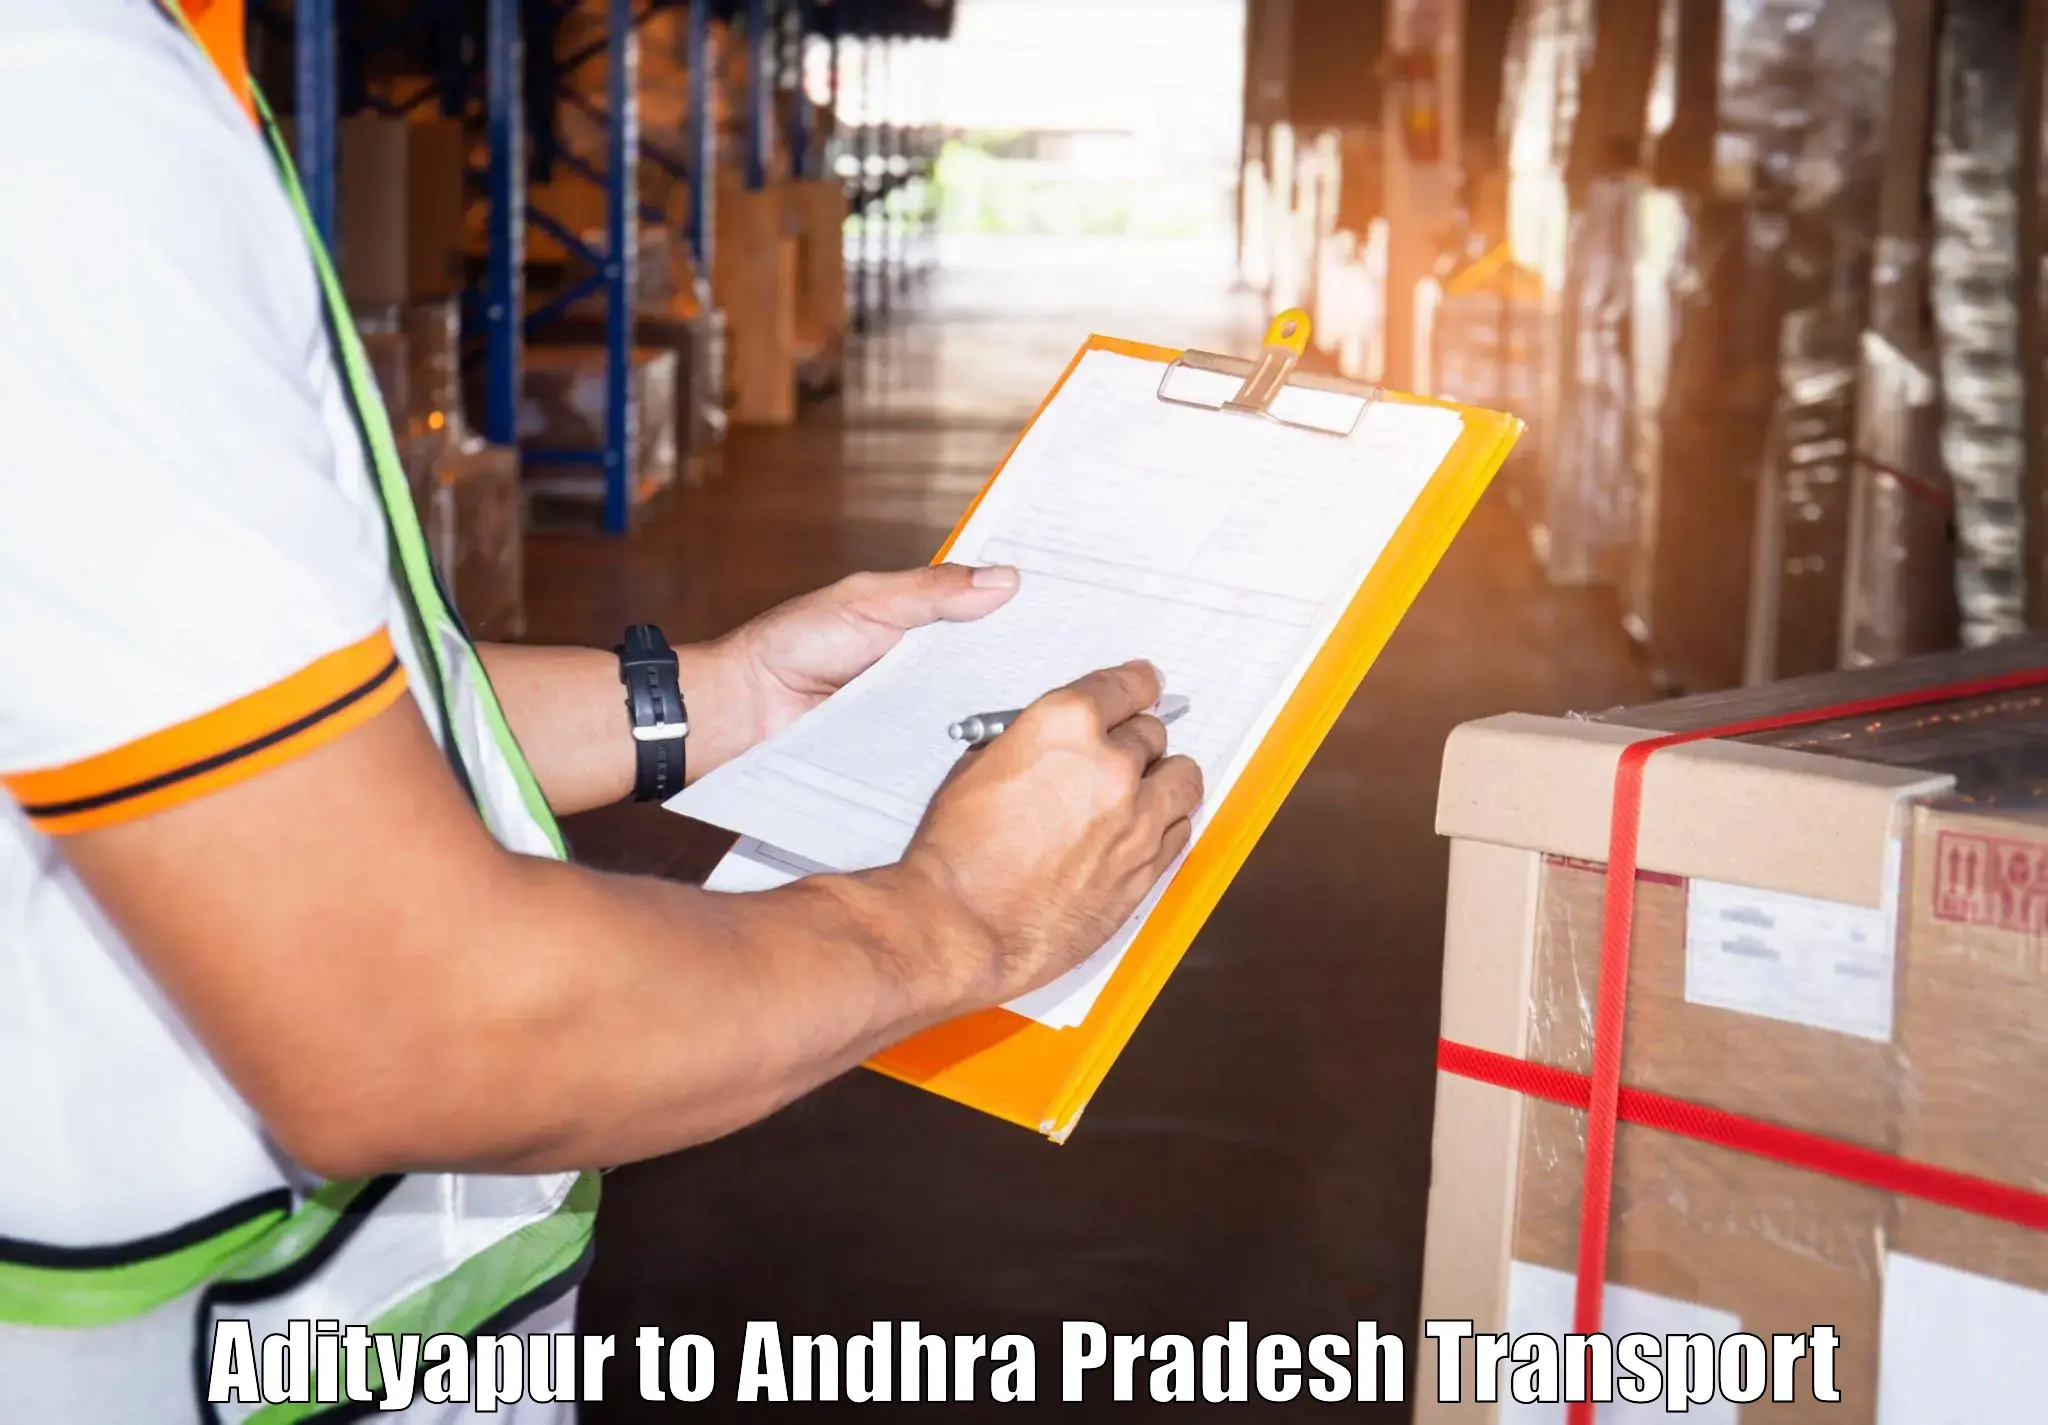 Shipping partner Adityapur to Udayagiri